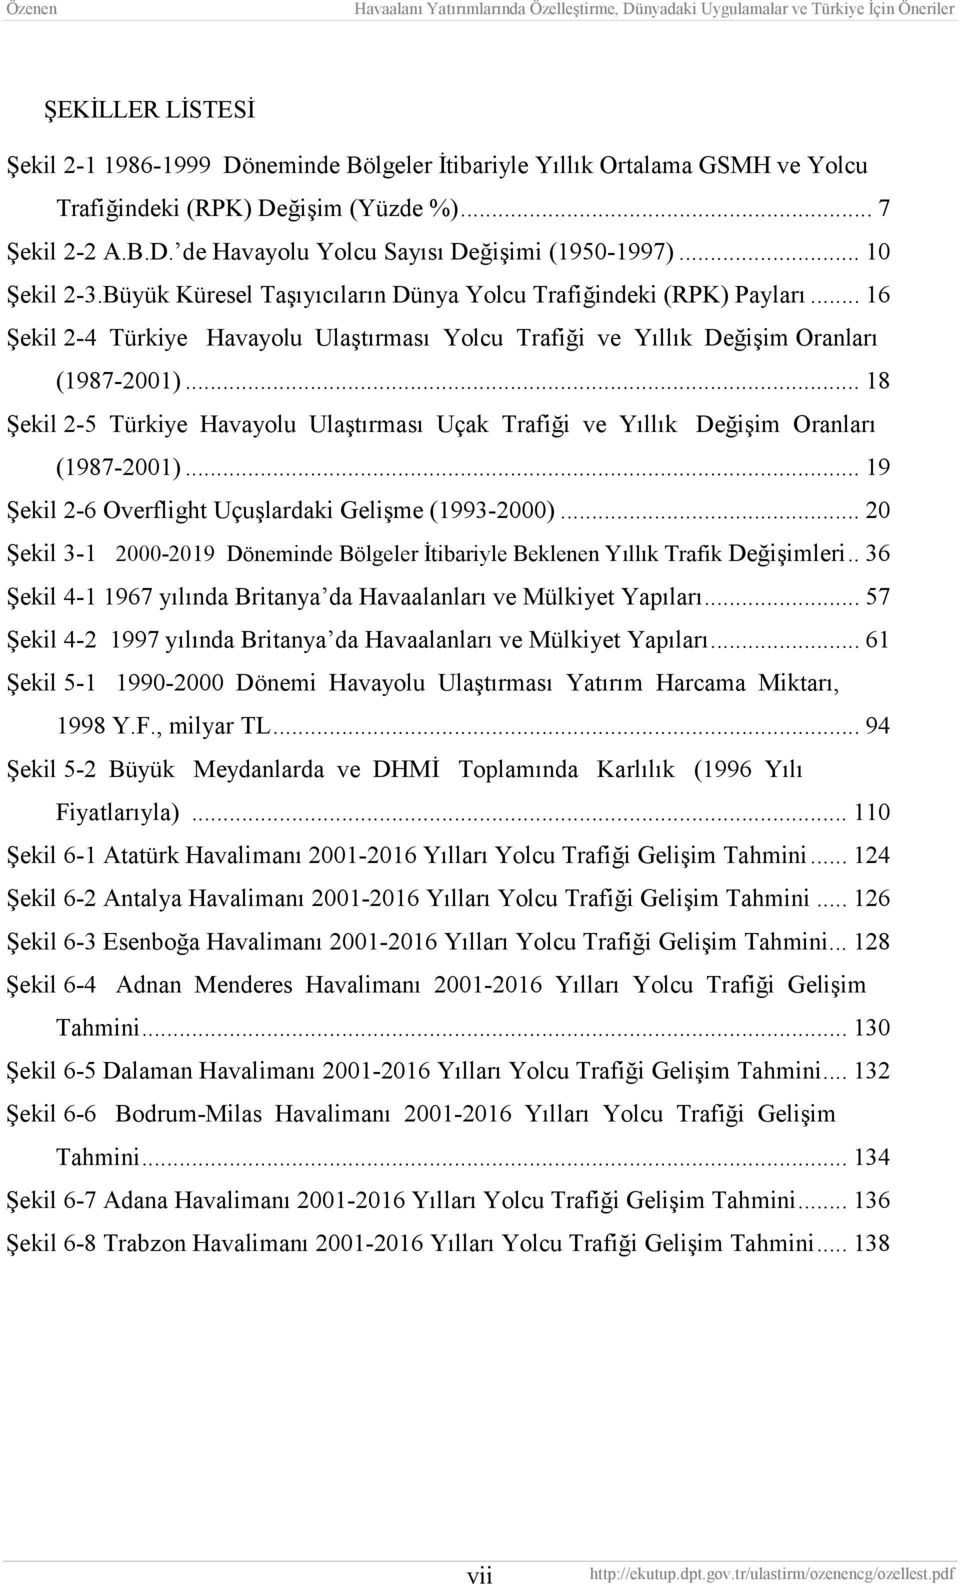 .. 18 Şekil 2-5 Türkiye Havayolu Ulaştırması Uçak Trafiği ve Yıllık Değişim Oranları (1987-2001)... 19 Şekil 2-6 Overflight Uçuşlardaki Gelişme (1993-2000).